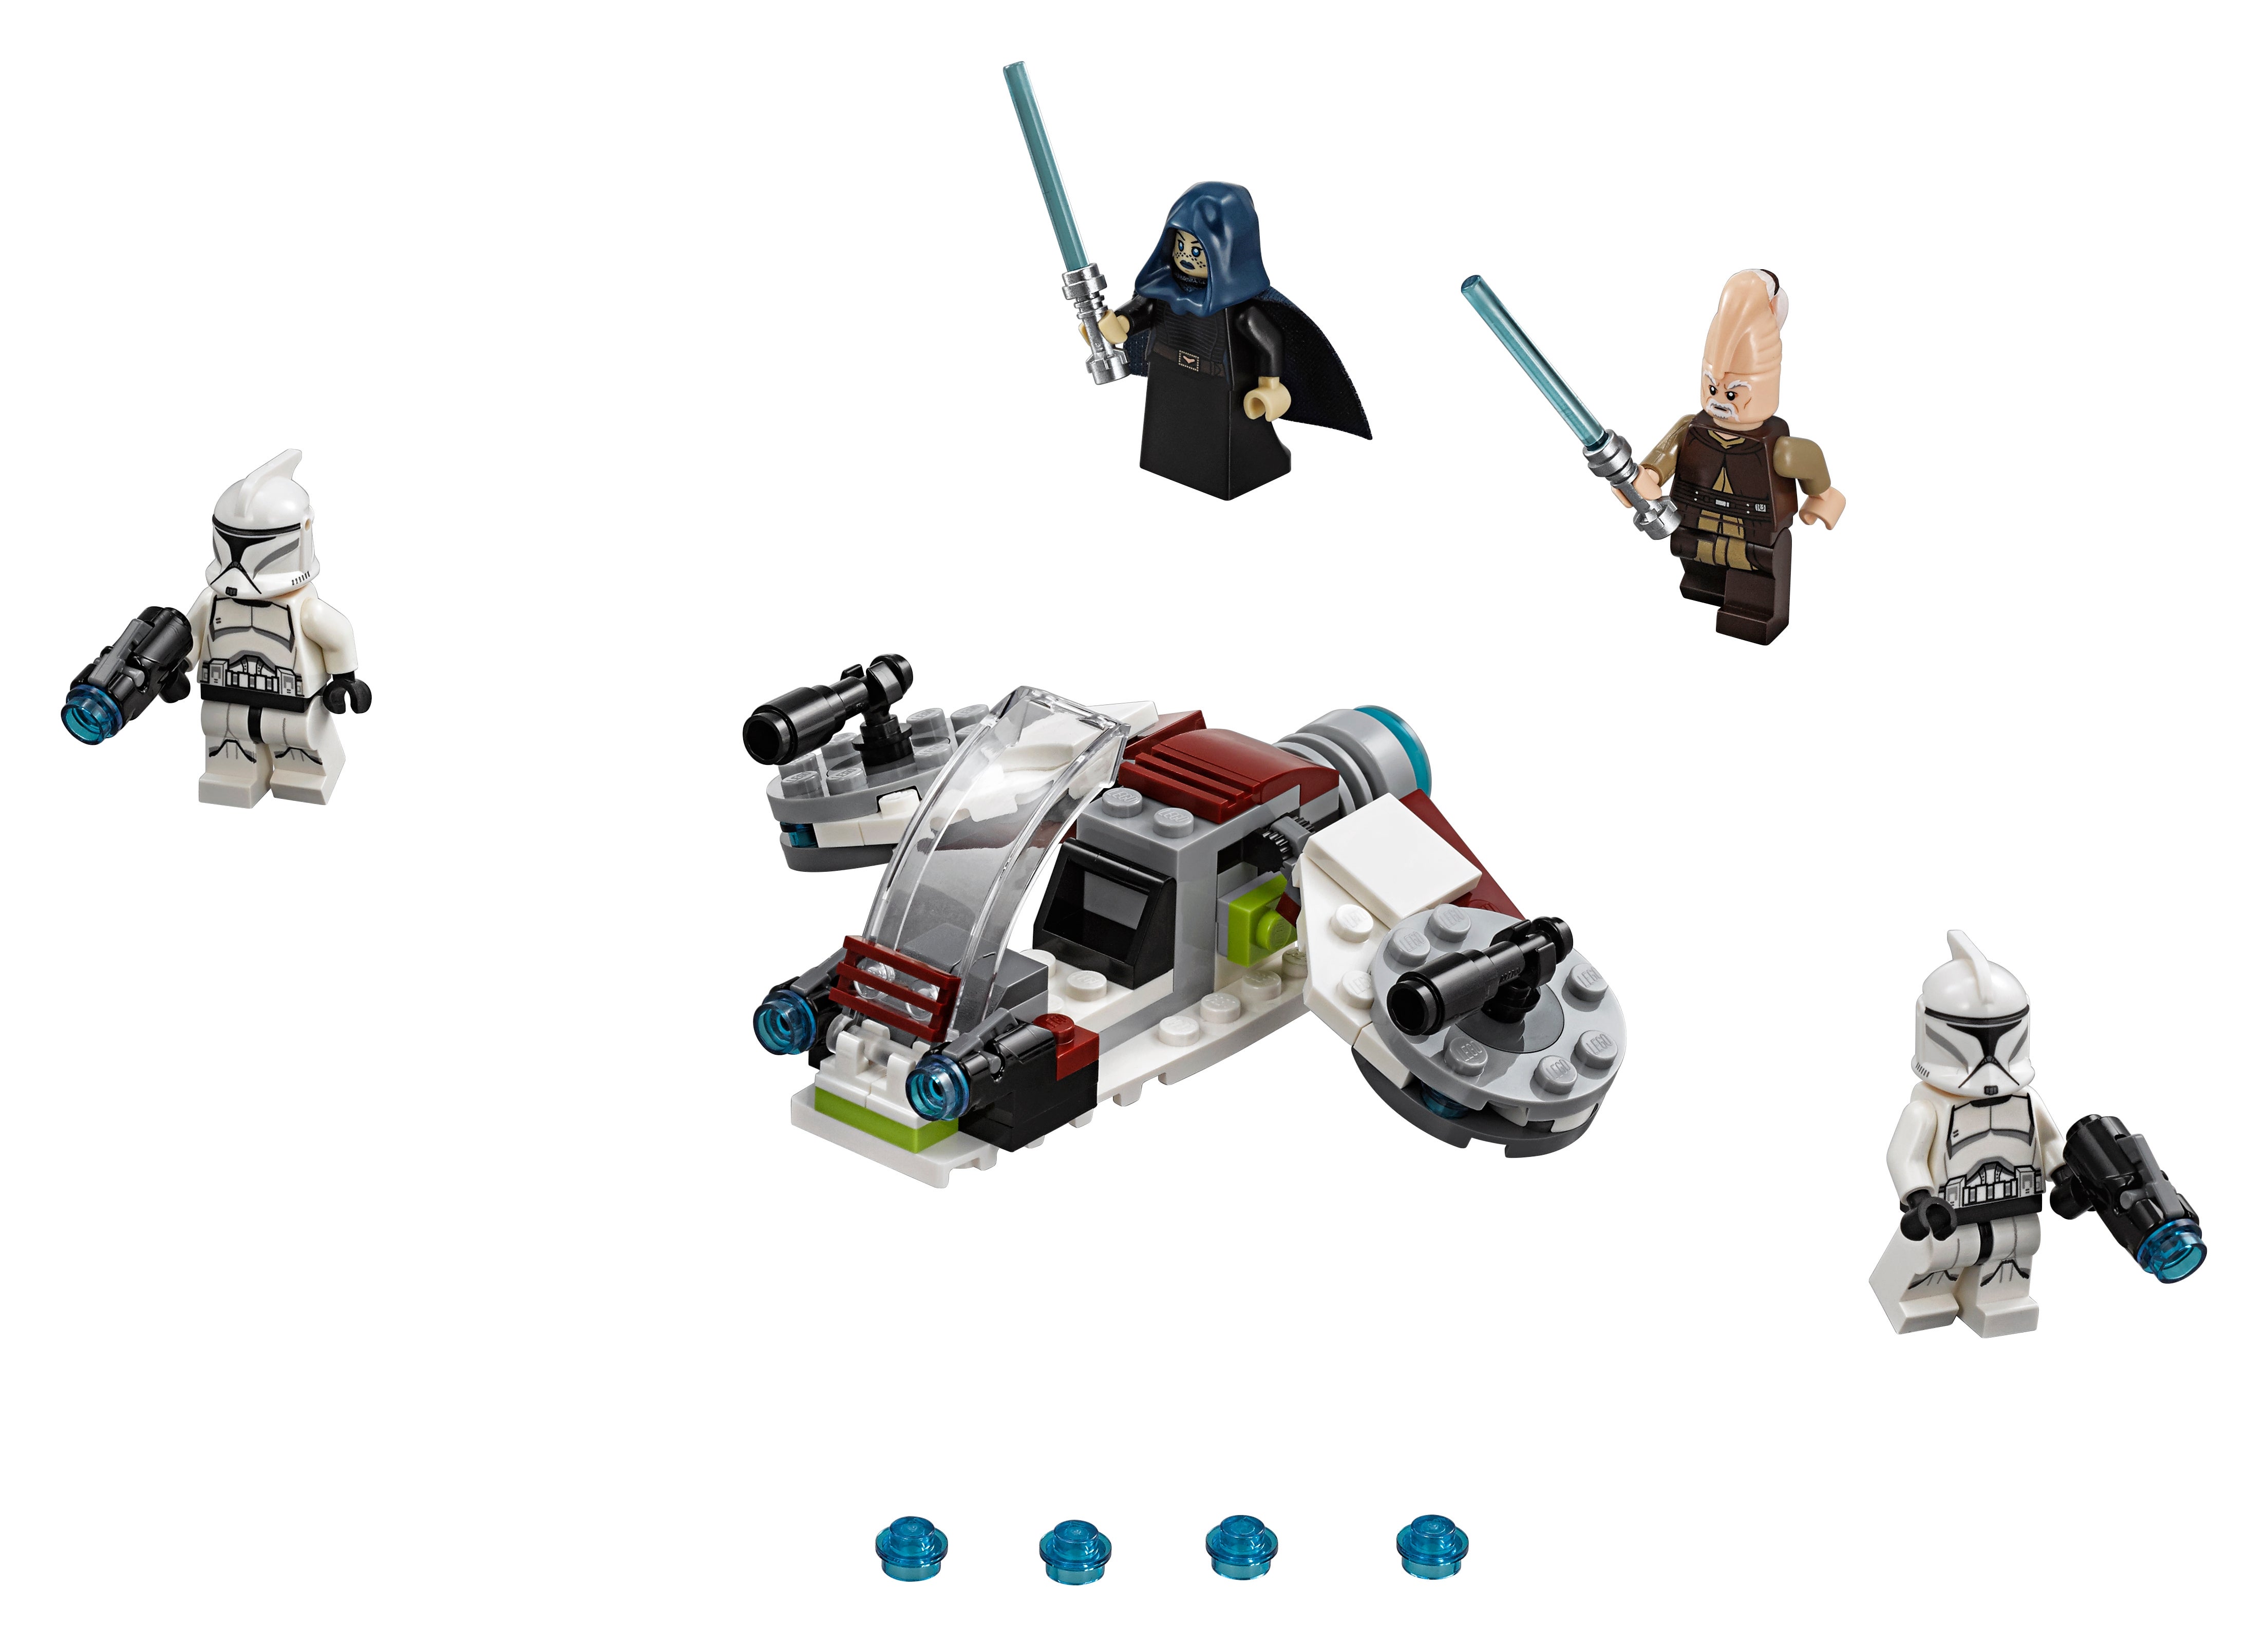 sans Boîte/Minifigures Lego Star Wars-Clone Trooper SPEEDER from set 75206 